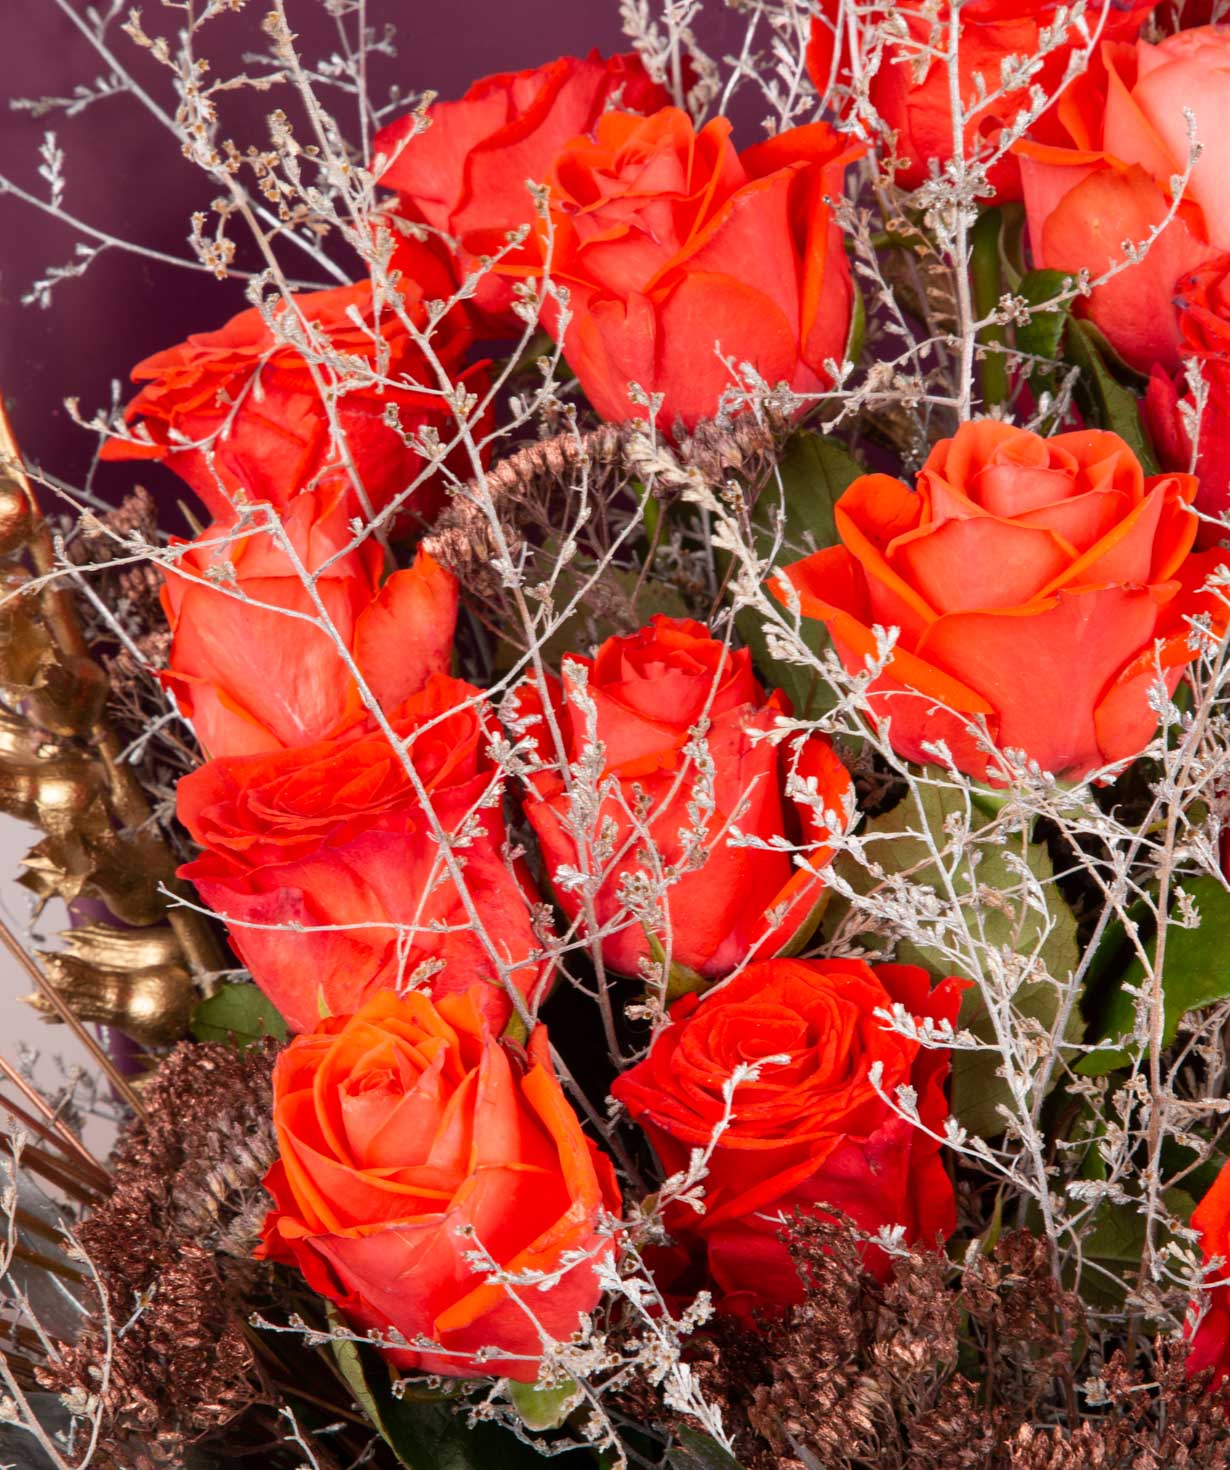 Ծաղկեփունջ «Փեյնթսվիլլ» վարդերով և չորածաղիկներով